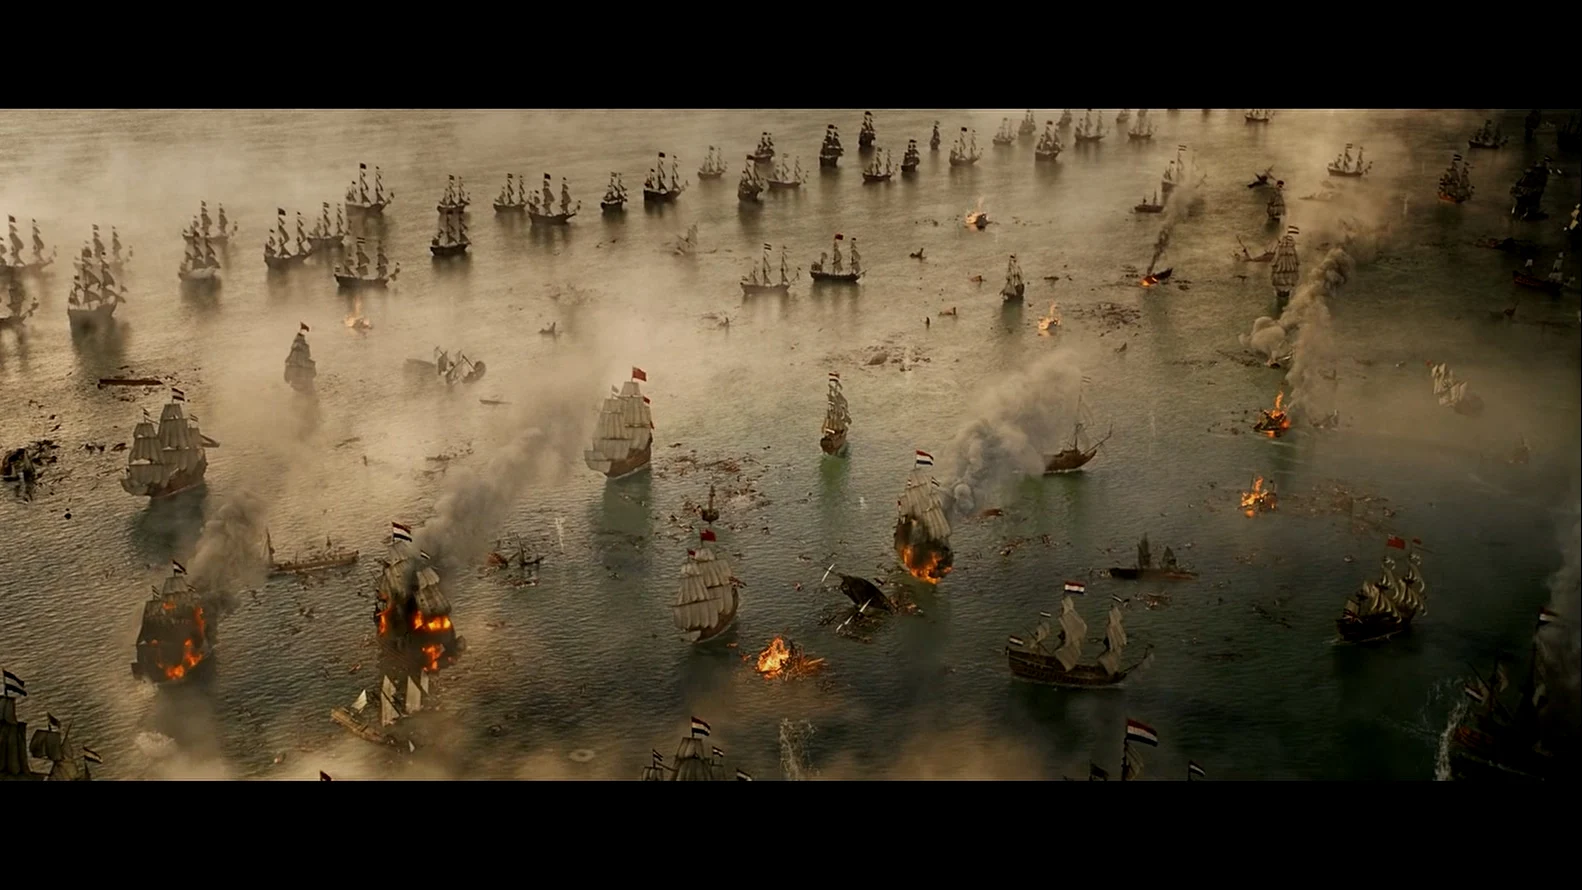 电影片头的海战场景，可以看到英军战舰以线列舰队作战